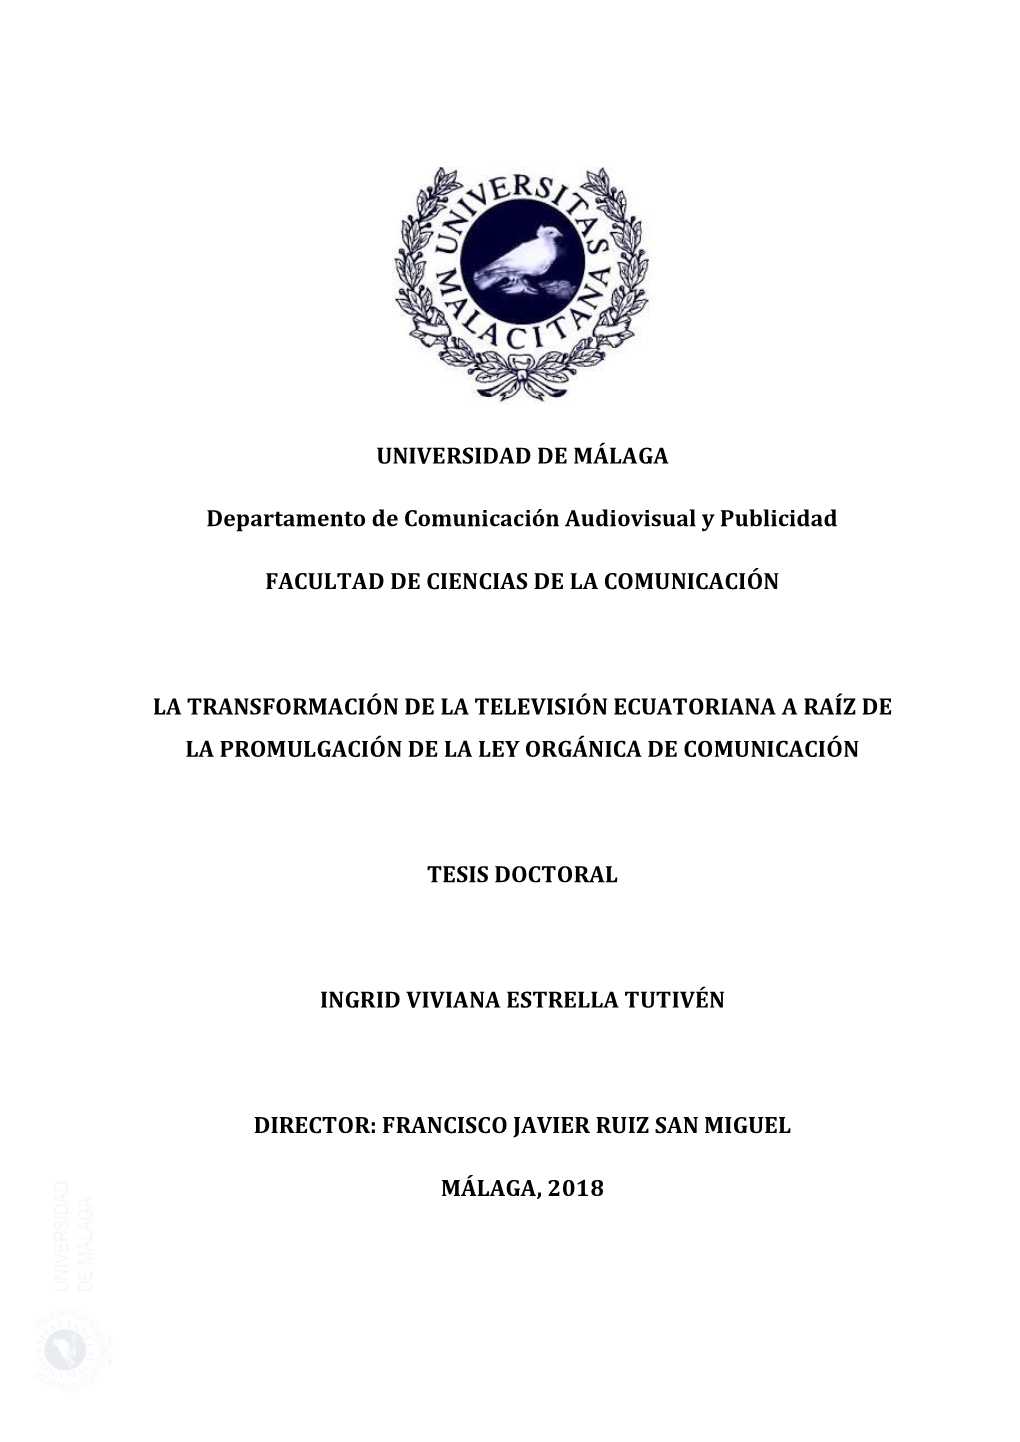 La Transformación De La Televisión Ecuatoriana a Raíz De La Promulgación De La Ley Orgánica De Comunicación